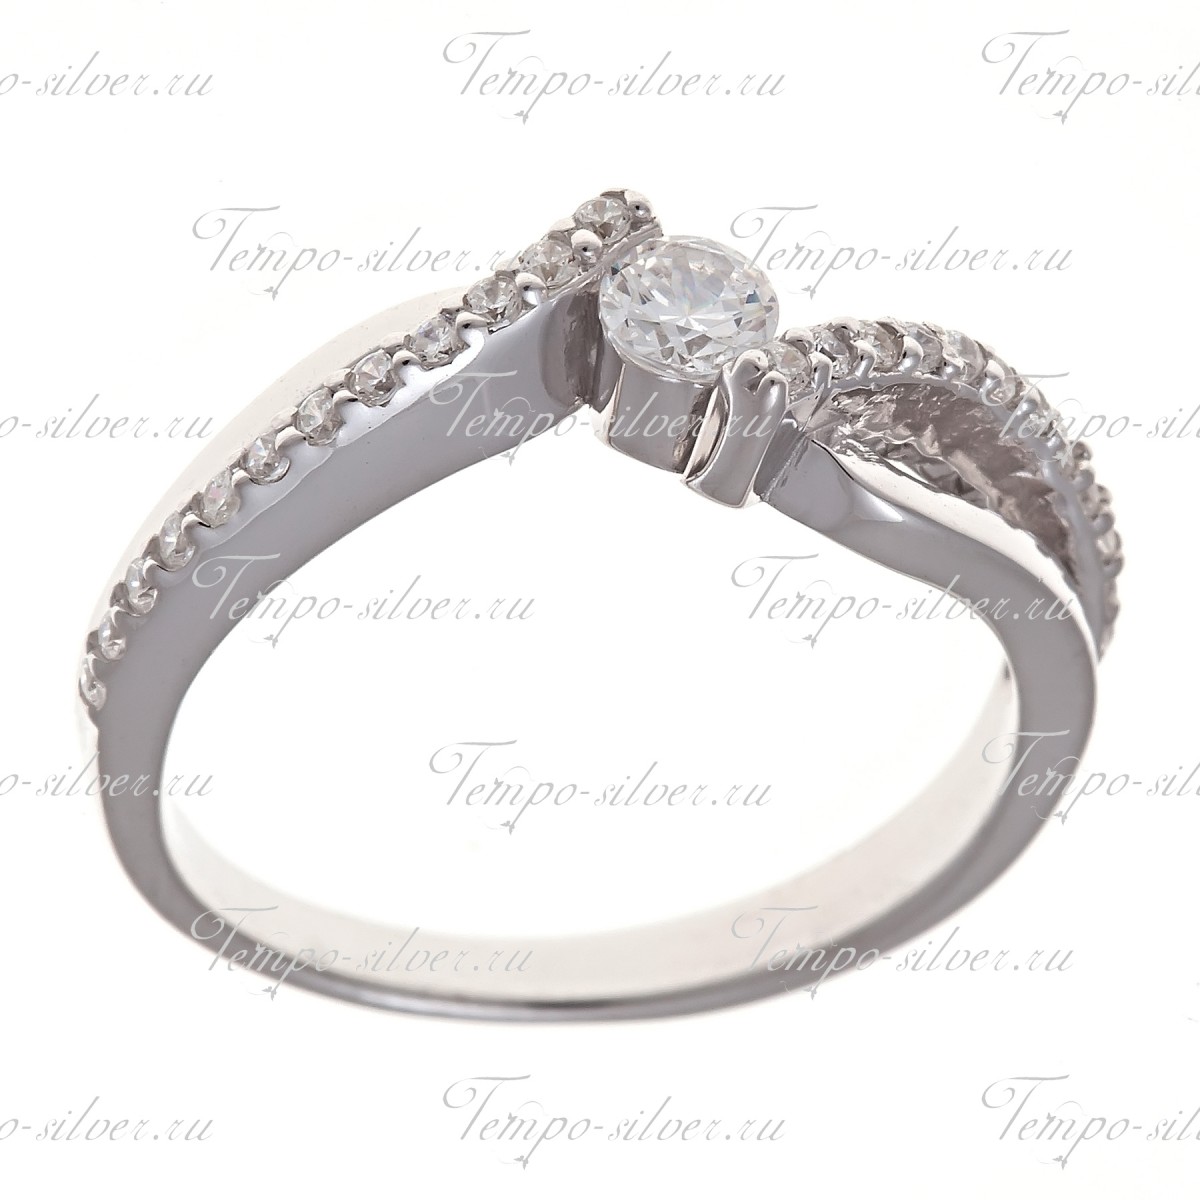 Кольцо из серебра на тонкой волнообразной шинке с белыми камнями цена